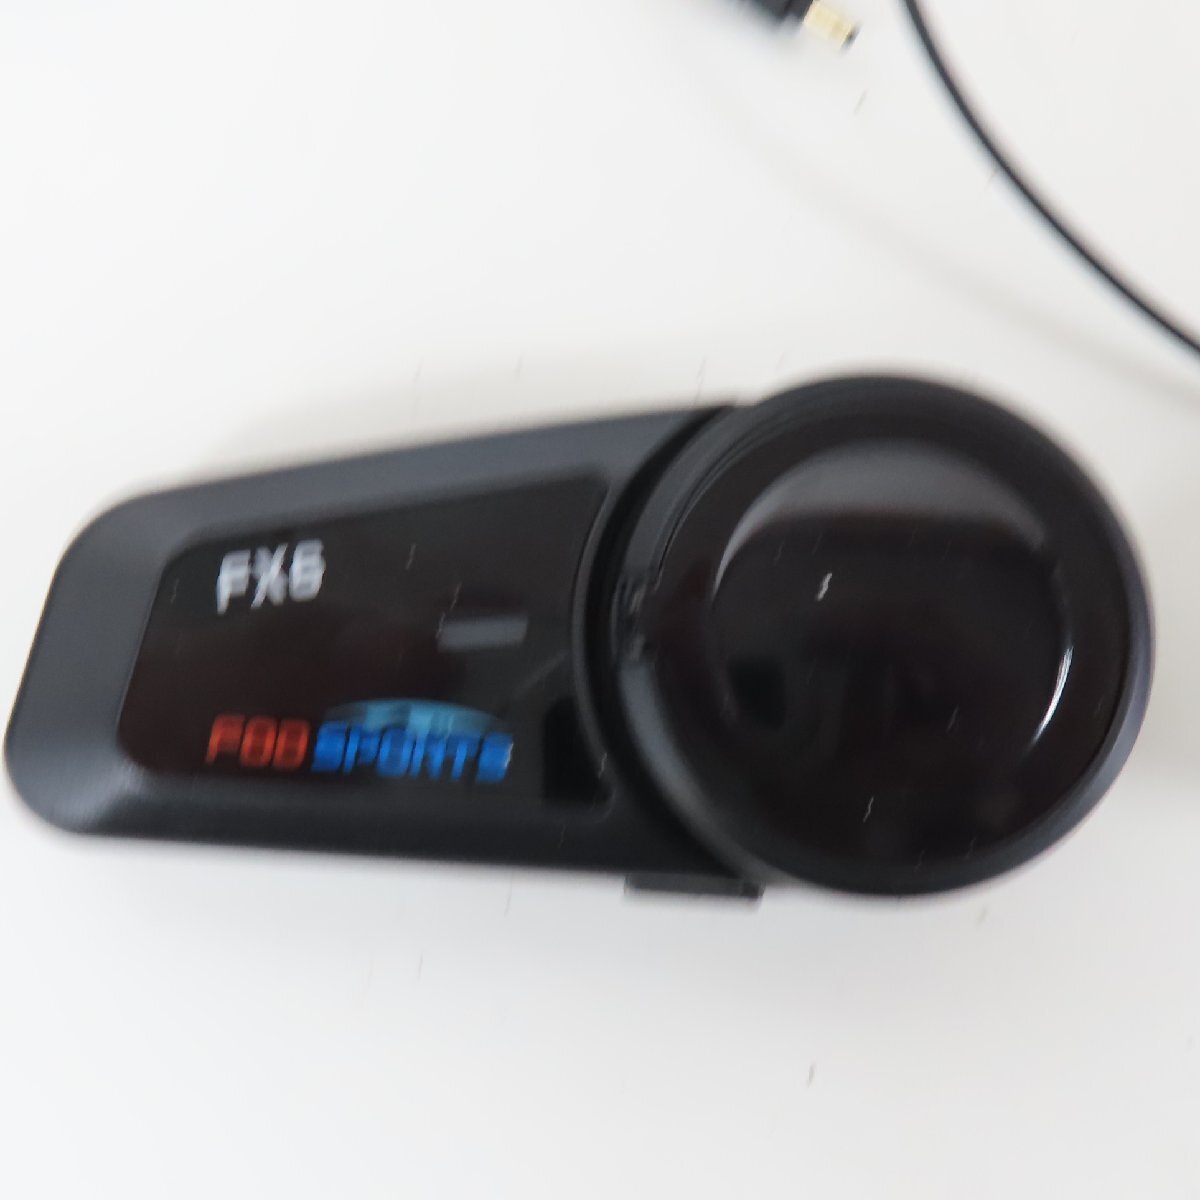 【美品】【本体動作確認済み】FODSPORTS FX6 Bluetooth インカム ペアユニット 無線 トランシーバー バイク 二輪 ツーリング オートバイの画像3